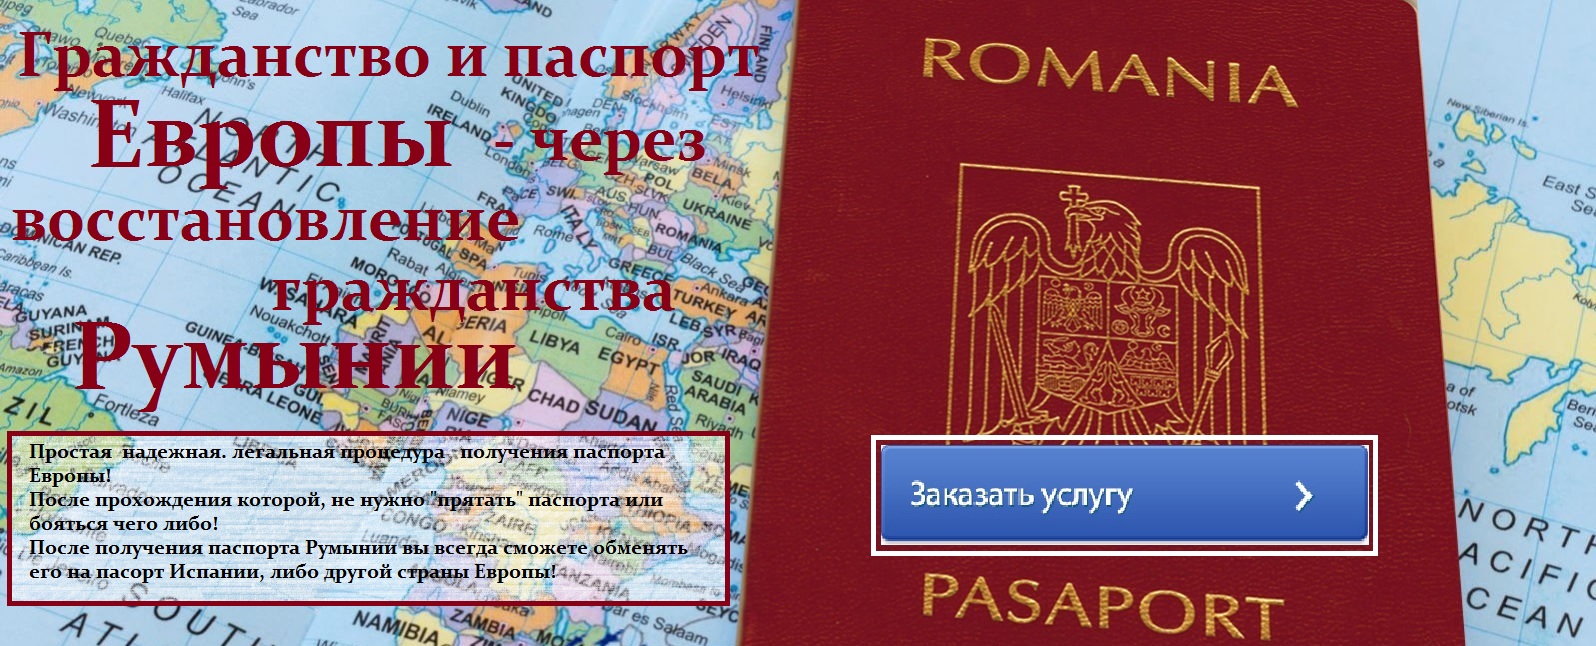 Как получить гражданство испании россиянину